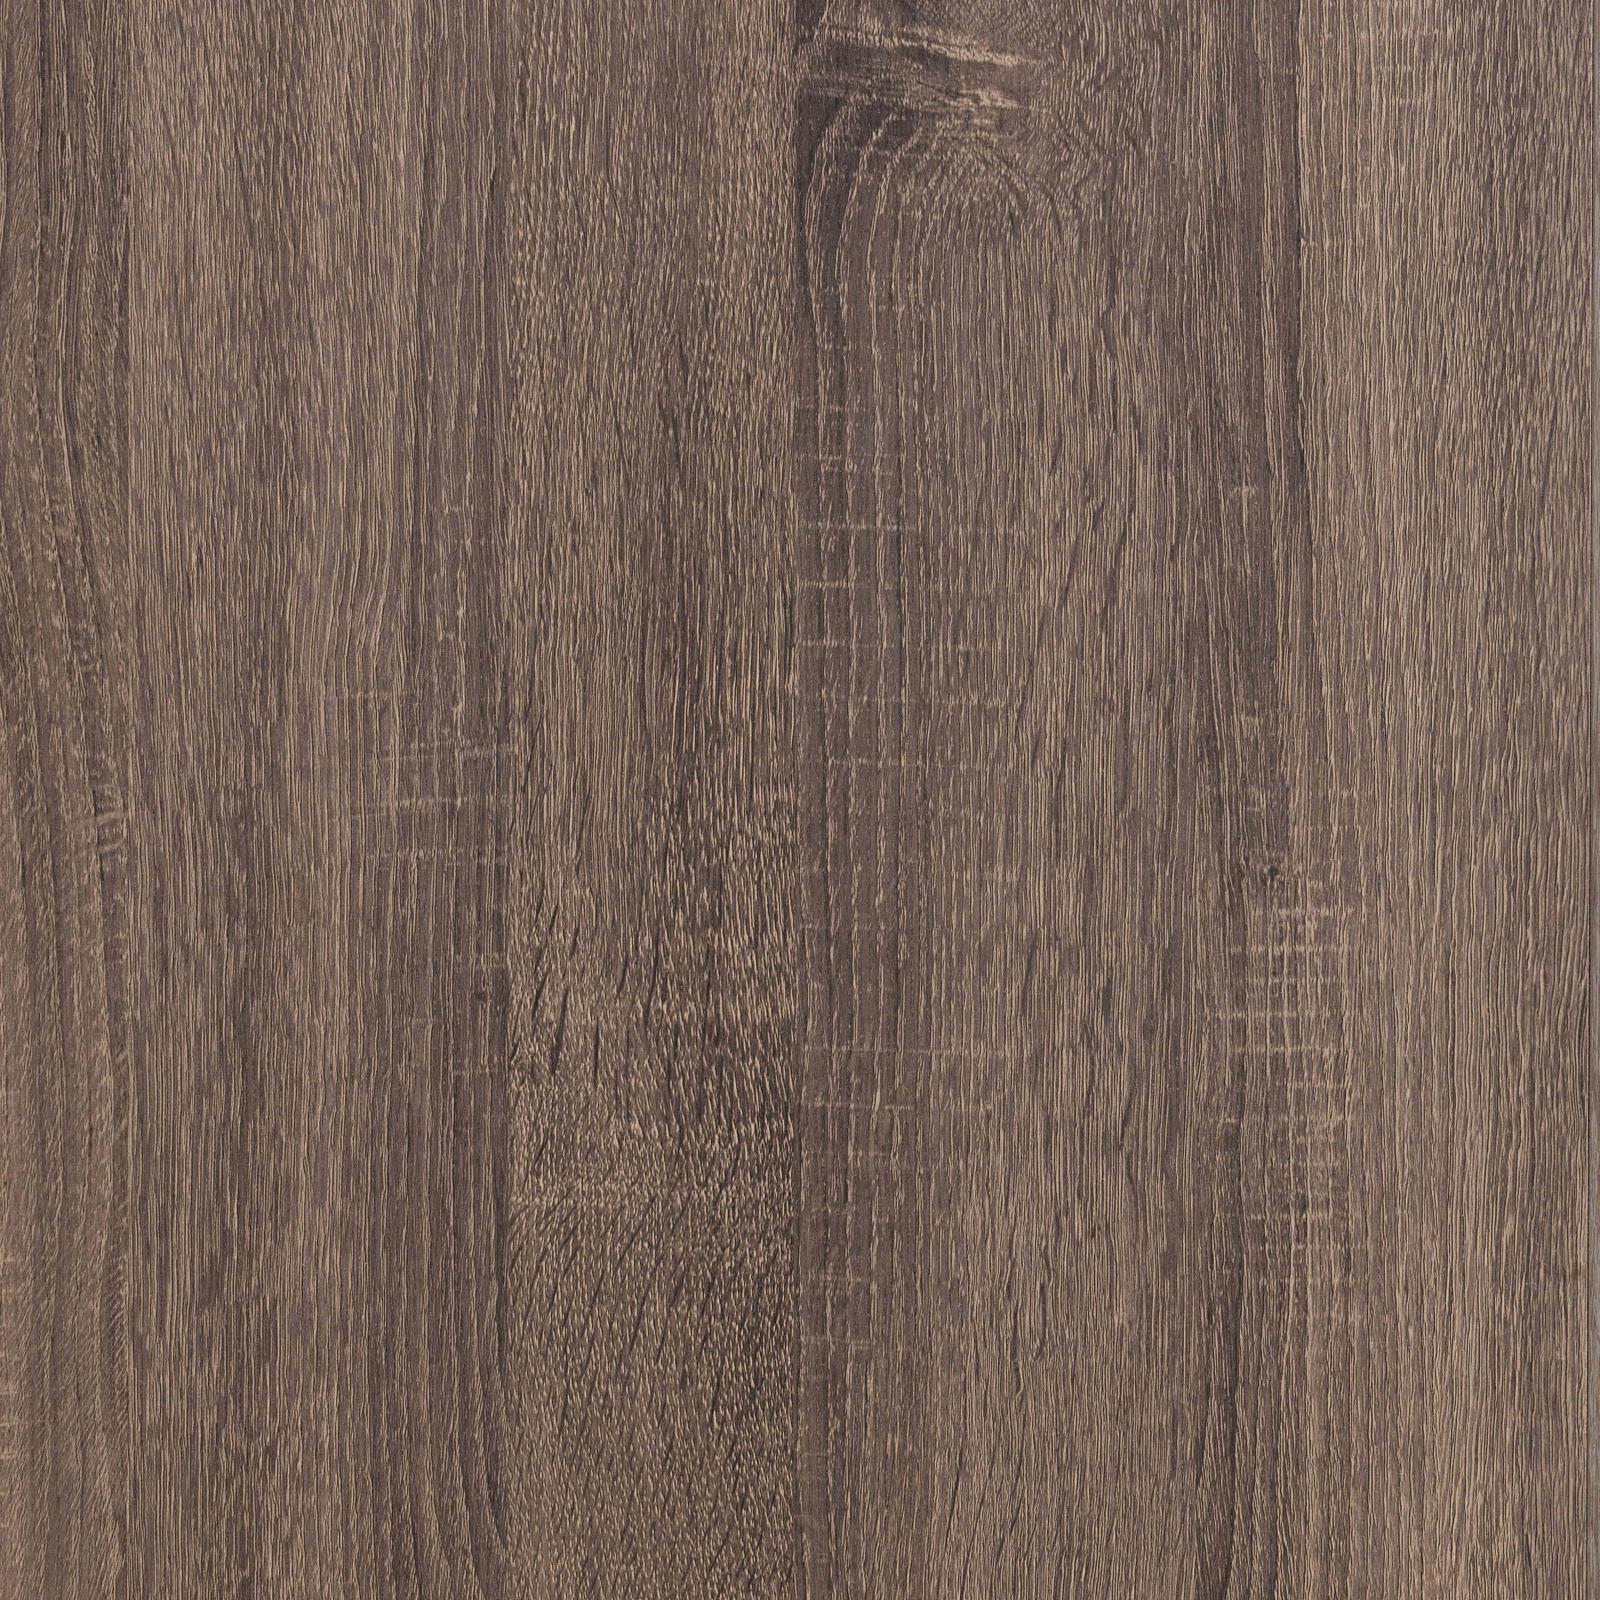 Brantford Barrel Oak 6-Drawer Dresser - 207043 - Bien Home Furniture &amp; Electronics